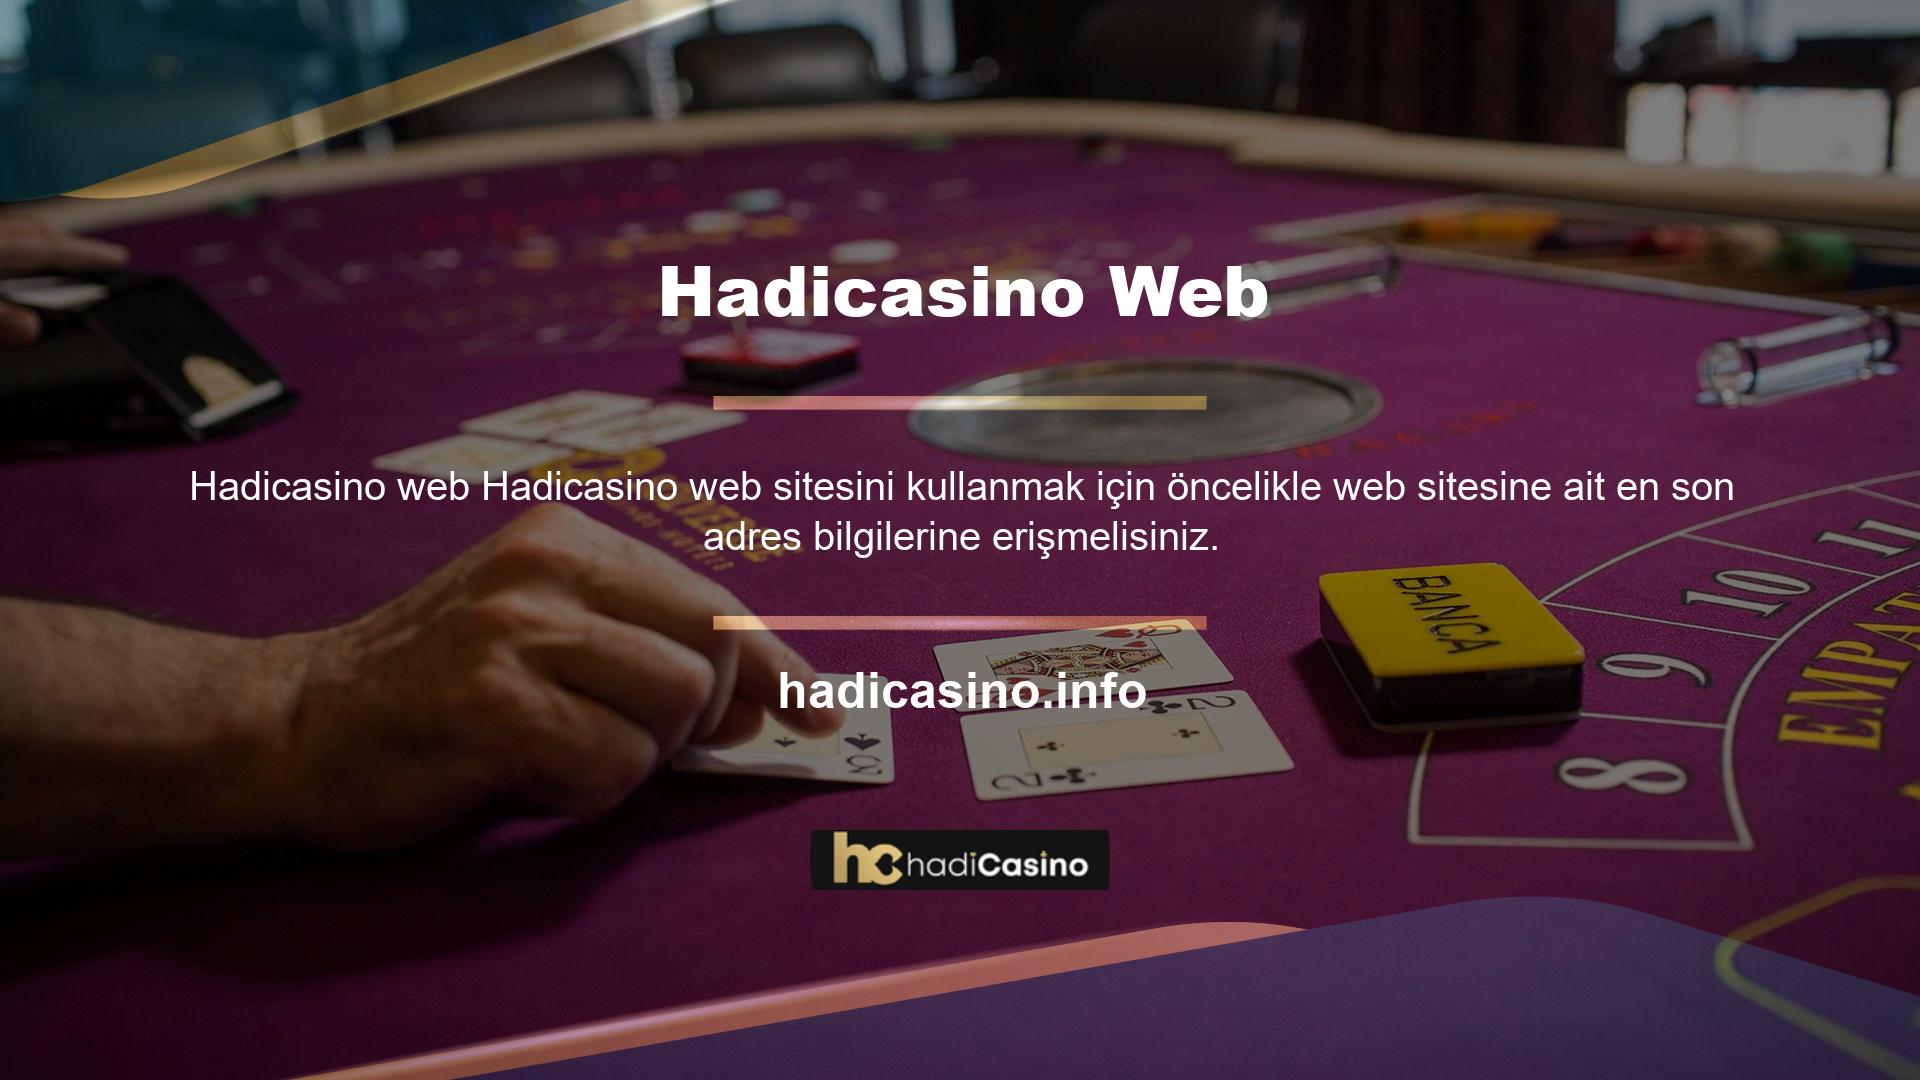 Yeni Hadicasino adresinizi aldıktan sonra siteyi kullanmaya ve daha fazla kazanmaya başlamaya hazırsınız